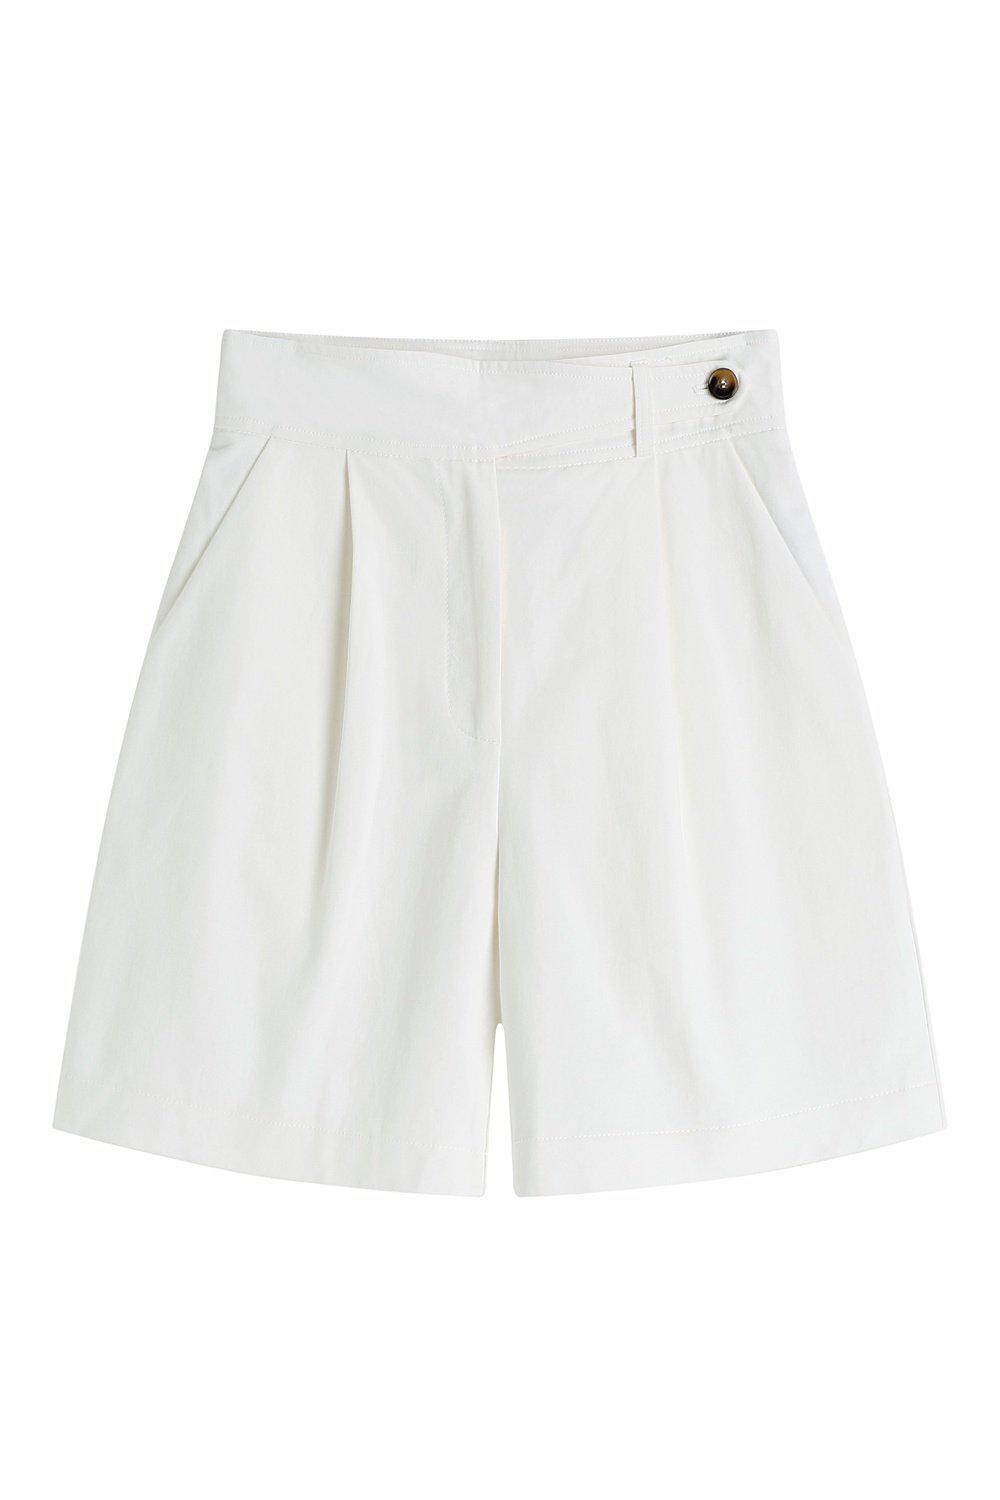 Island Escape Cotton Shorts